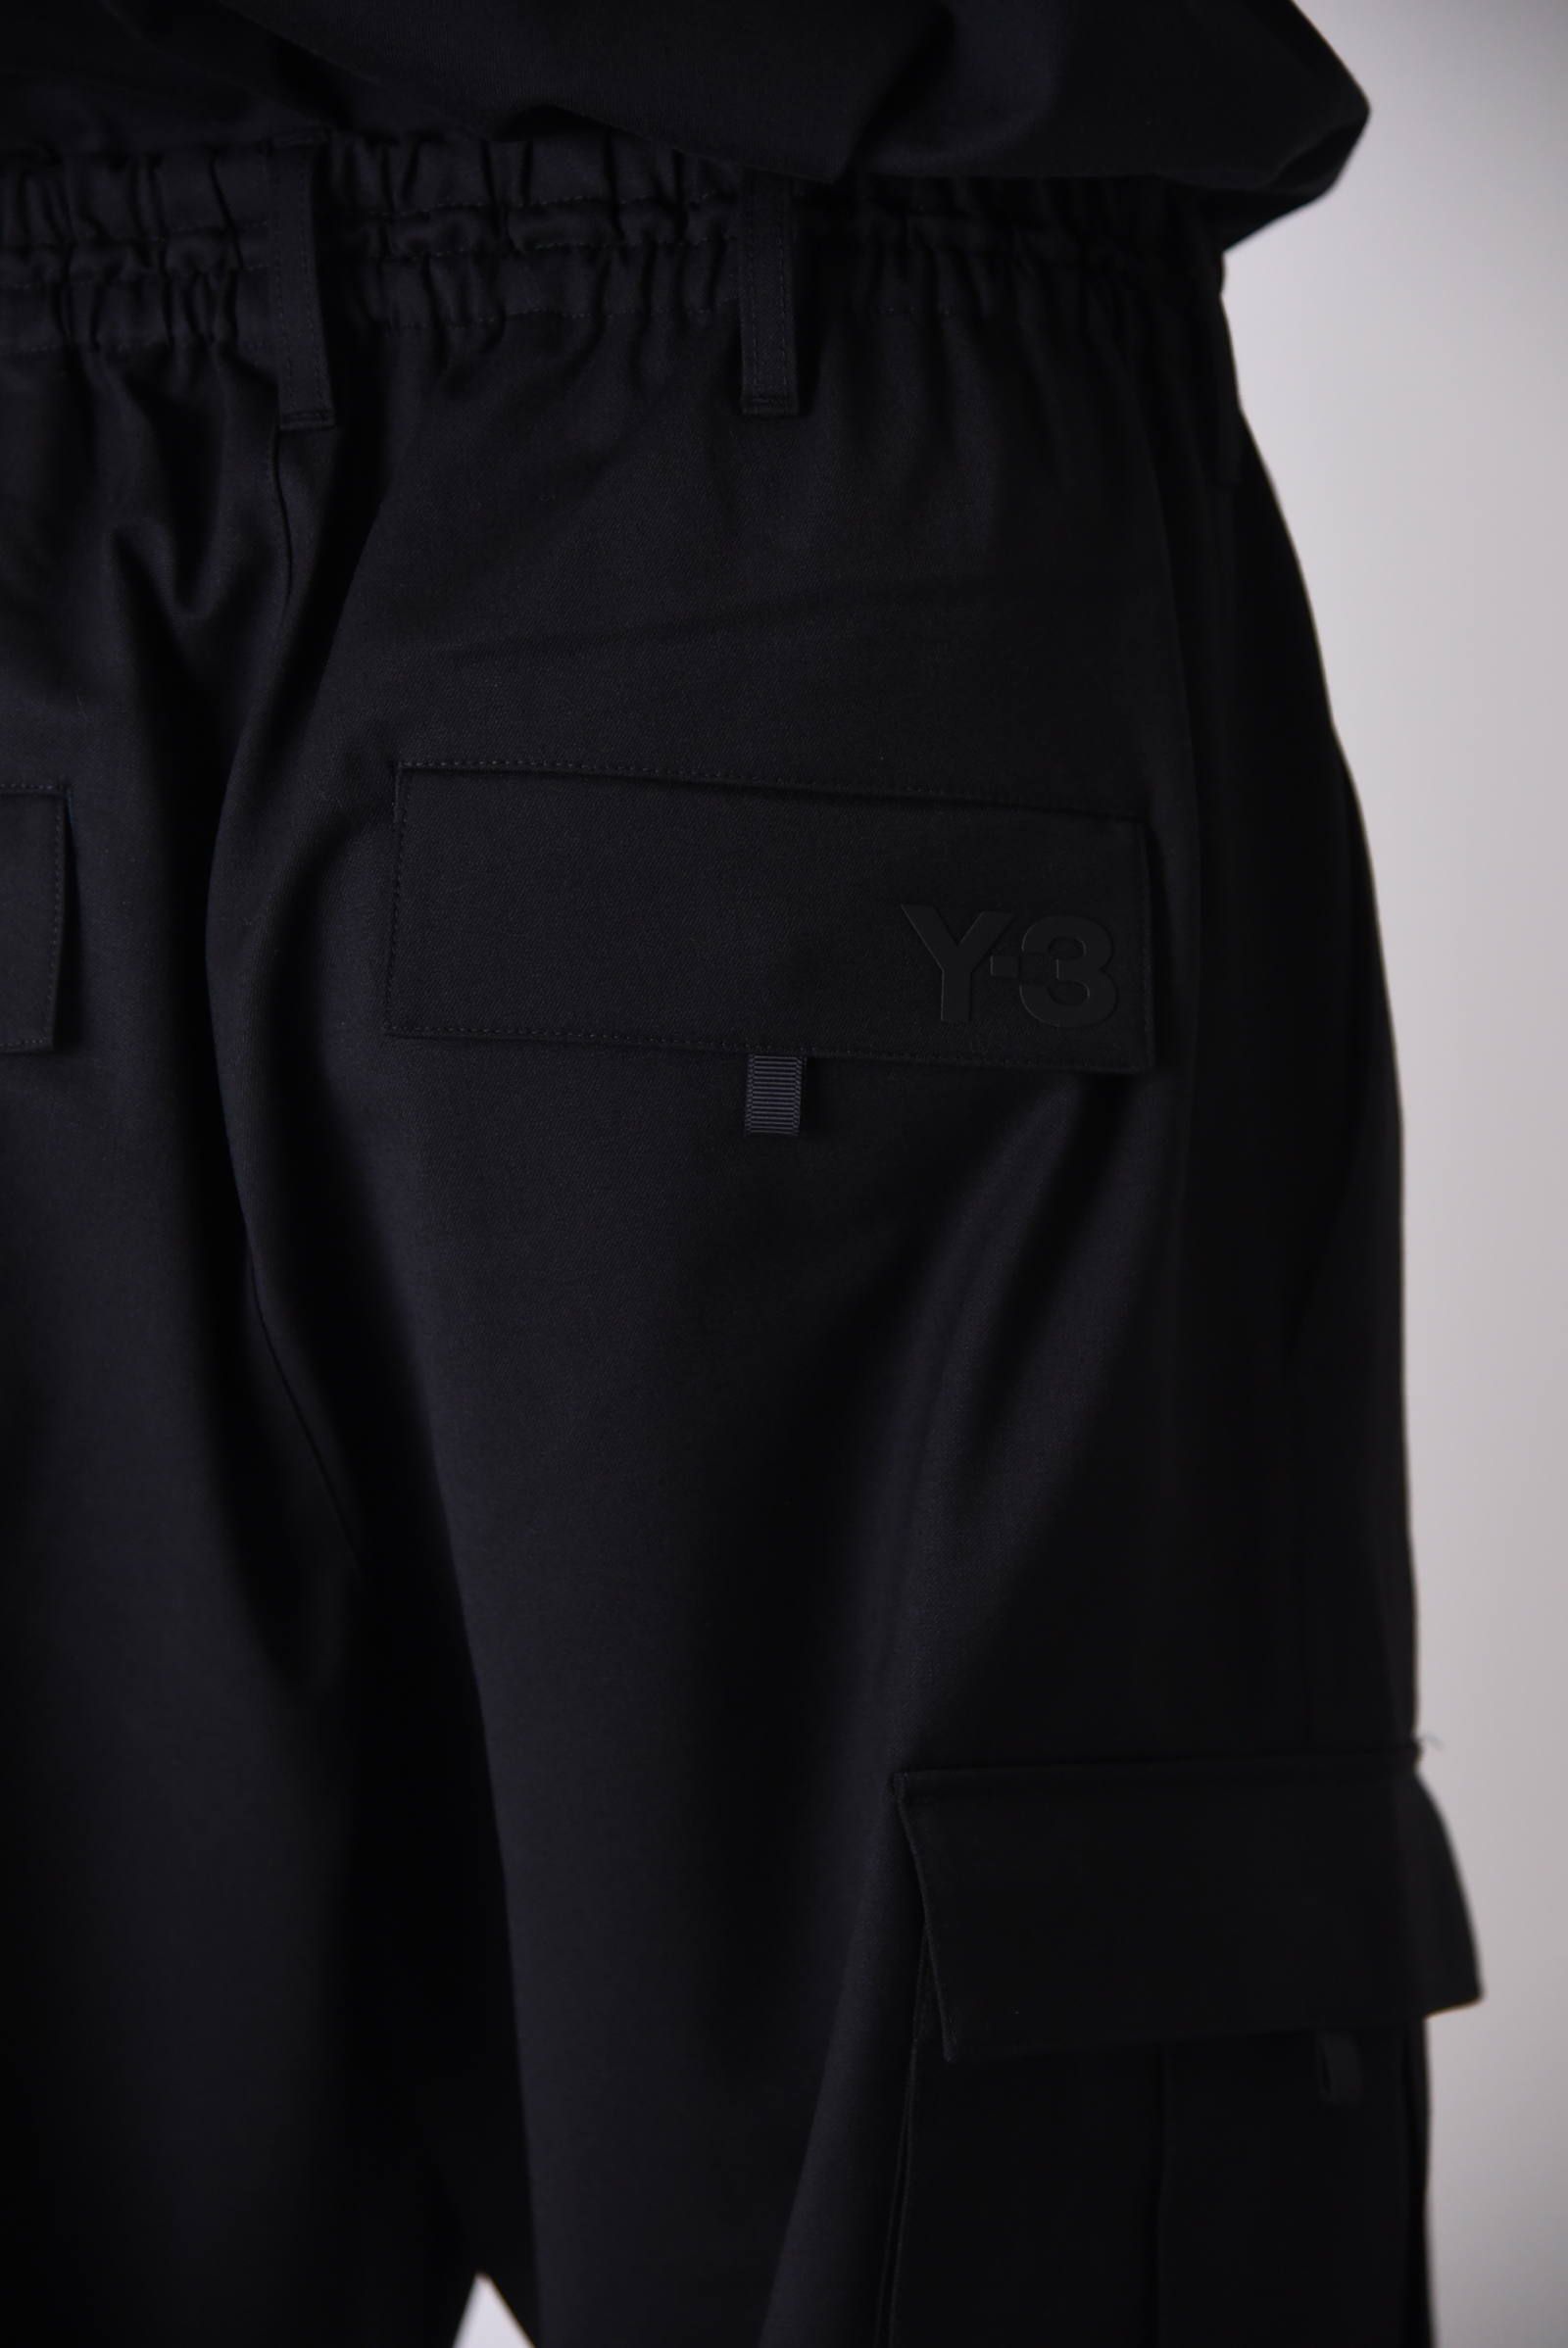 Y-3 CL CARGO PANTS / クラシック カーゴパンツ ブラック - XS